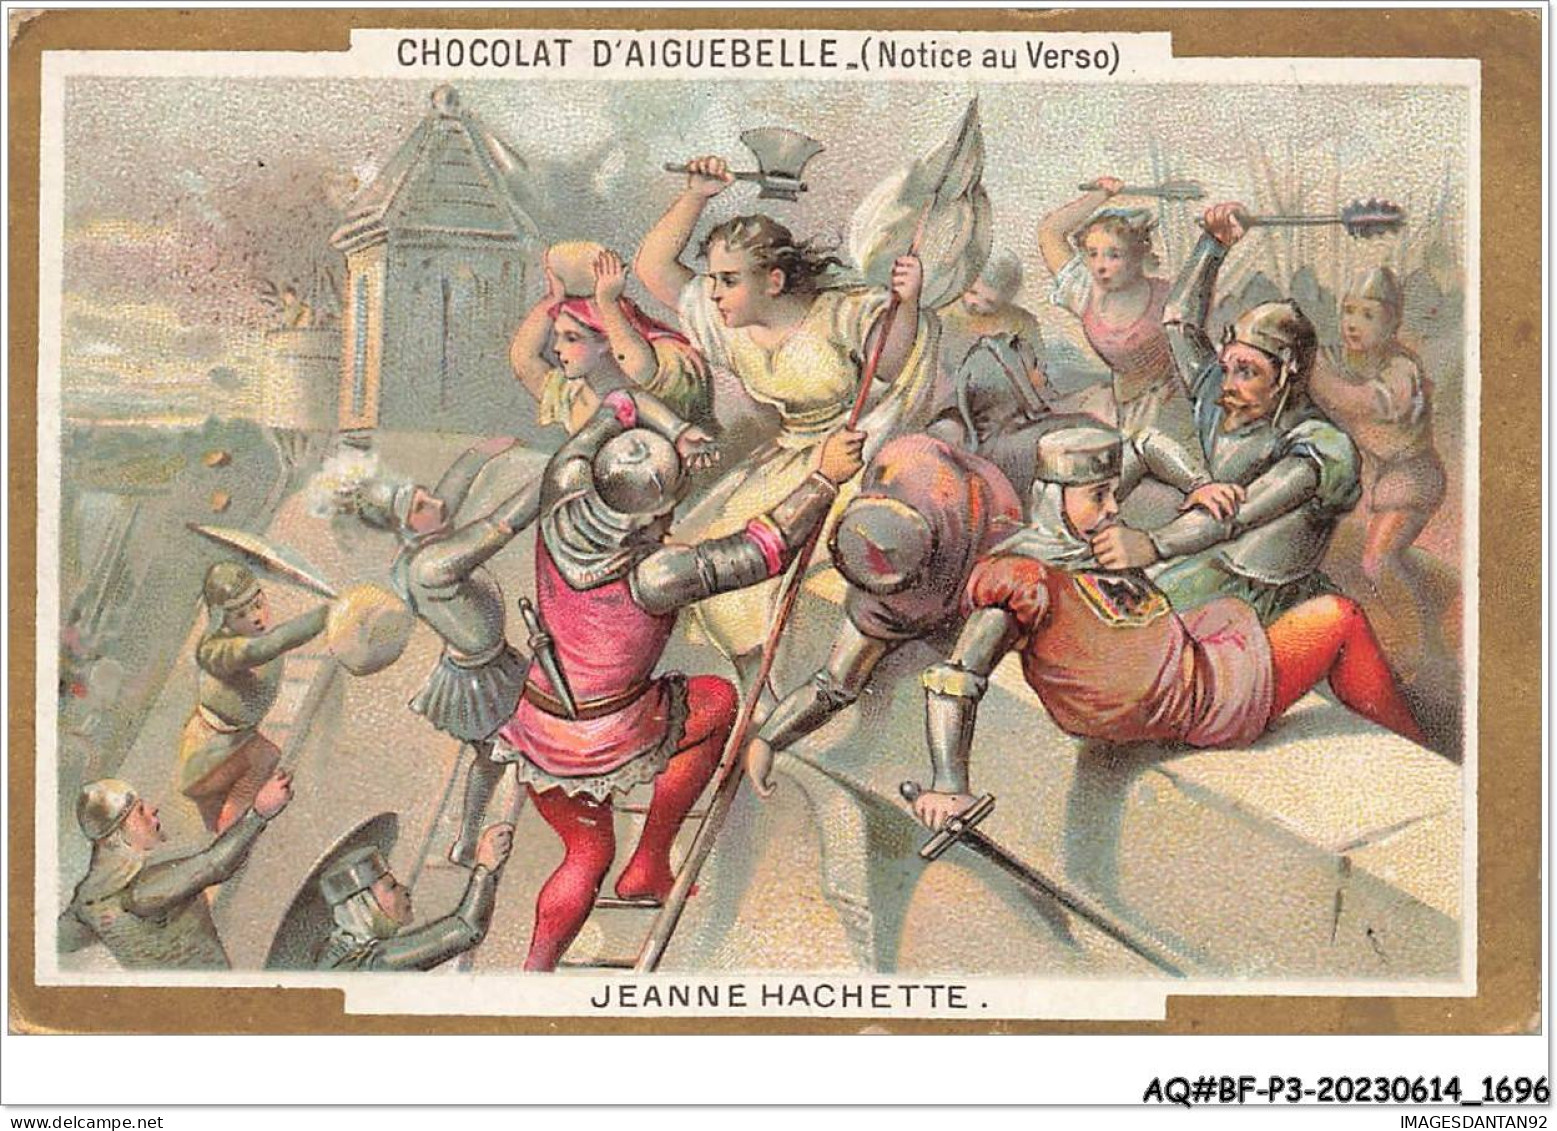 AQ#BFP3-CHROMOS-0846 - CHOCOLAT D'AIGUEBELLE - Jeanne Hachette - Aiguebelle